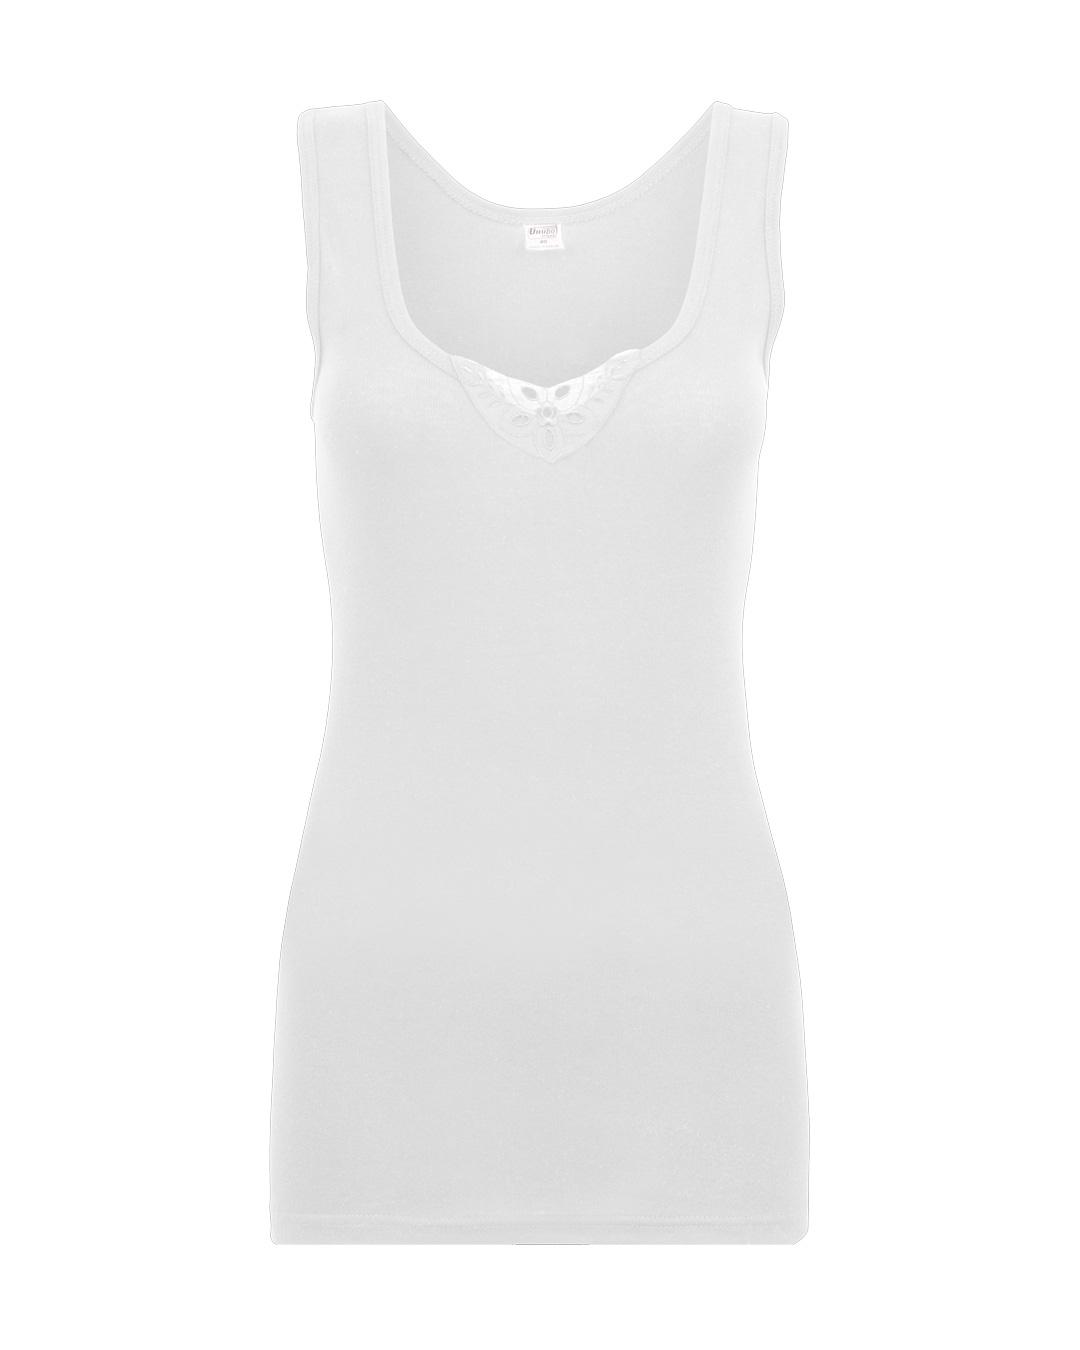 Selected image for INPRO Ženska atlet majica na široke bretele sa čipkom bela